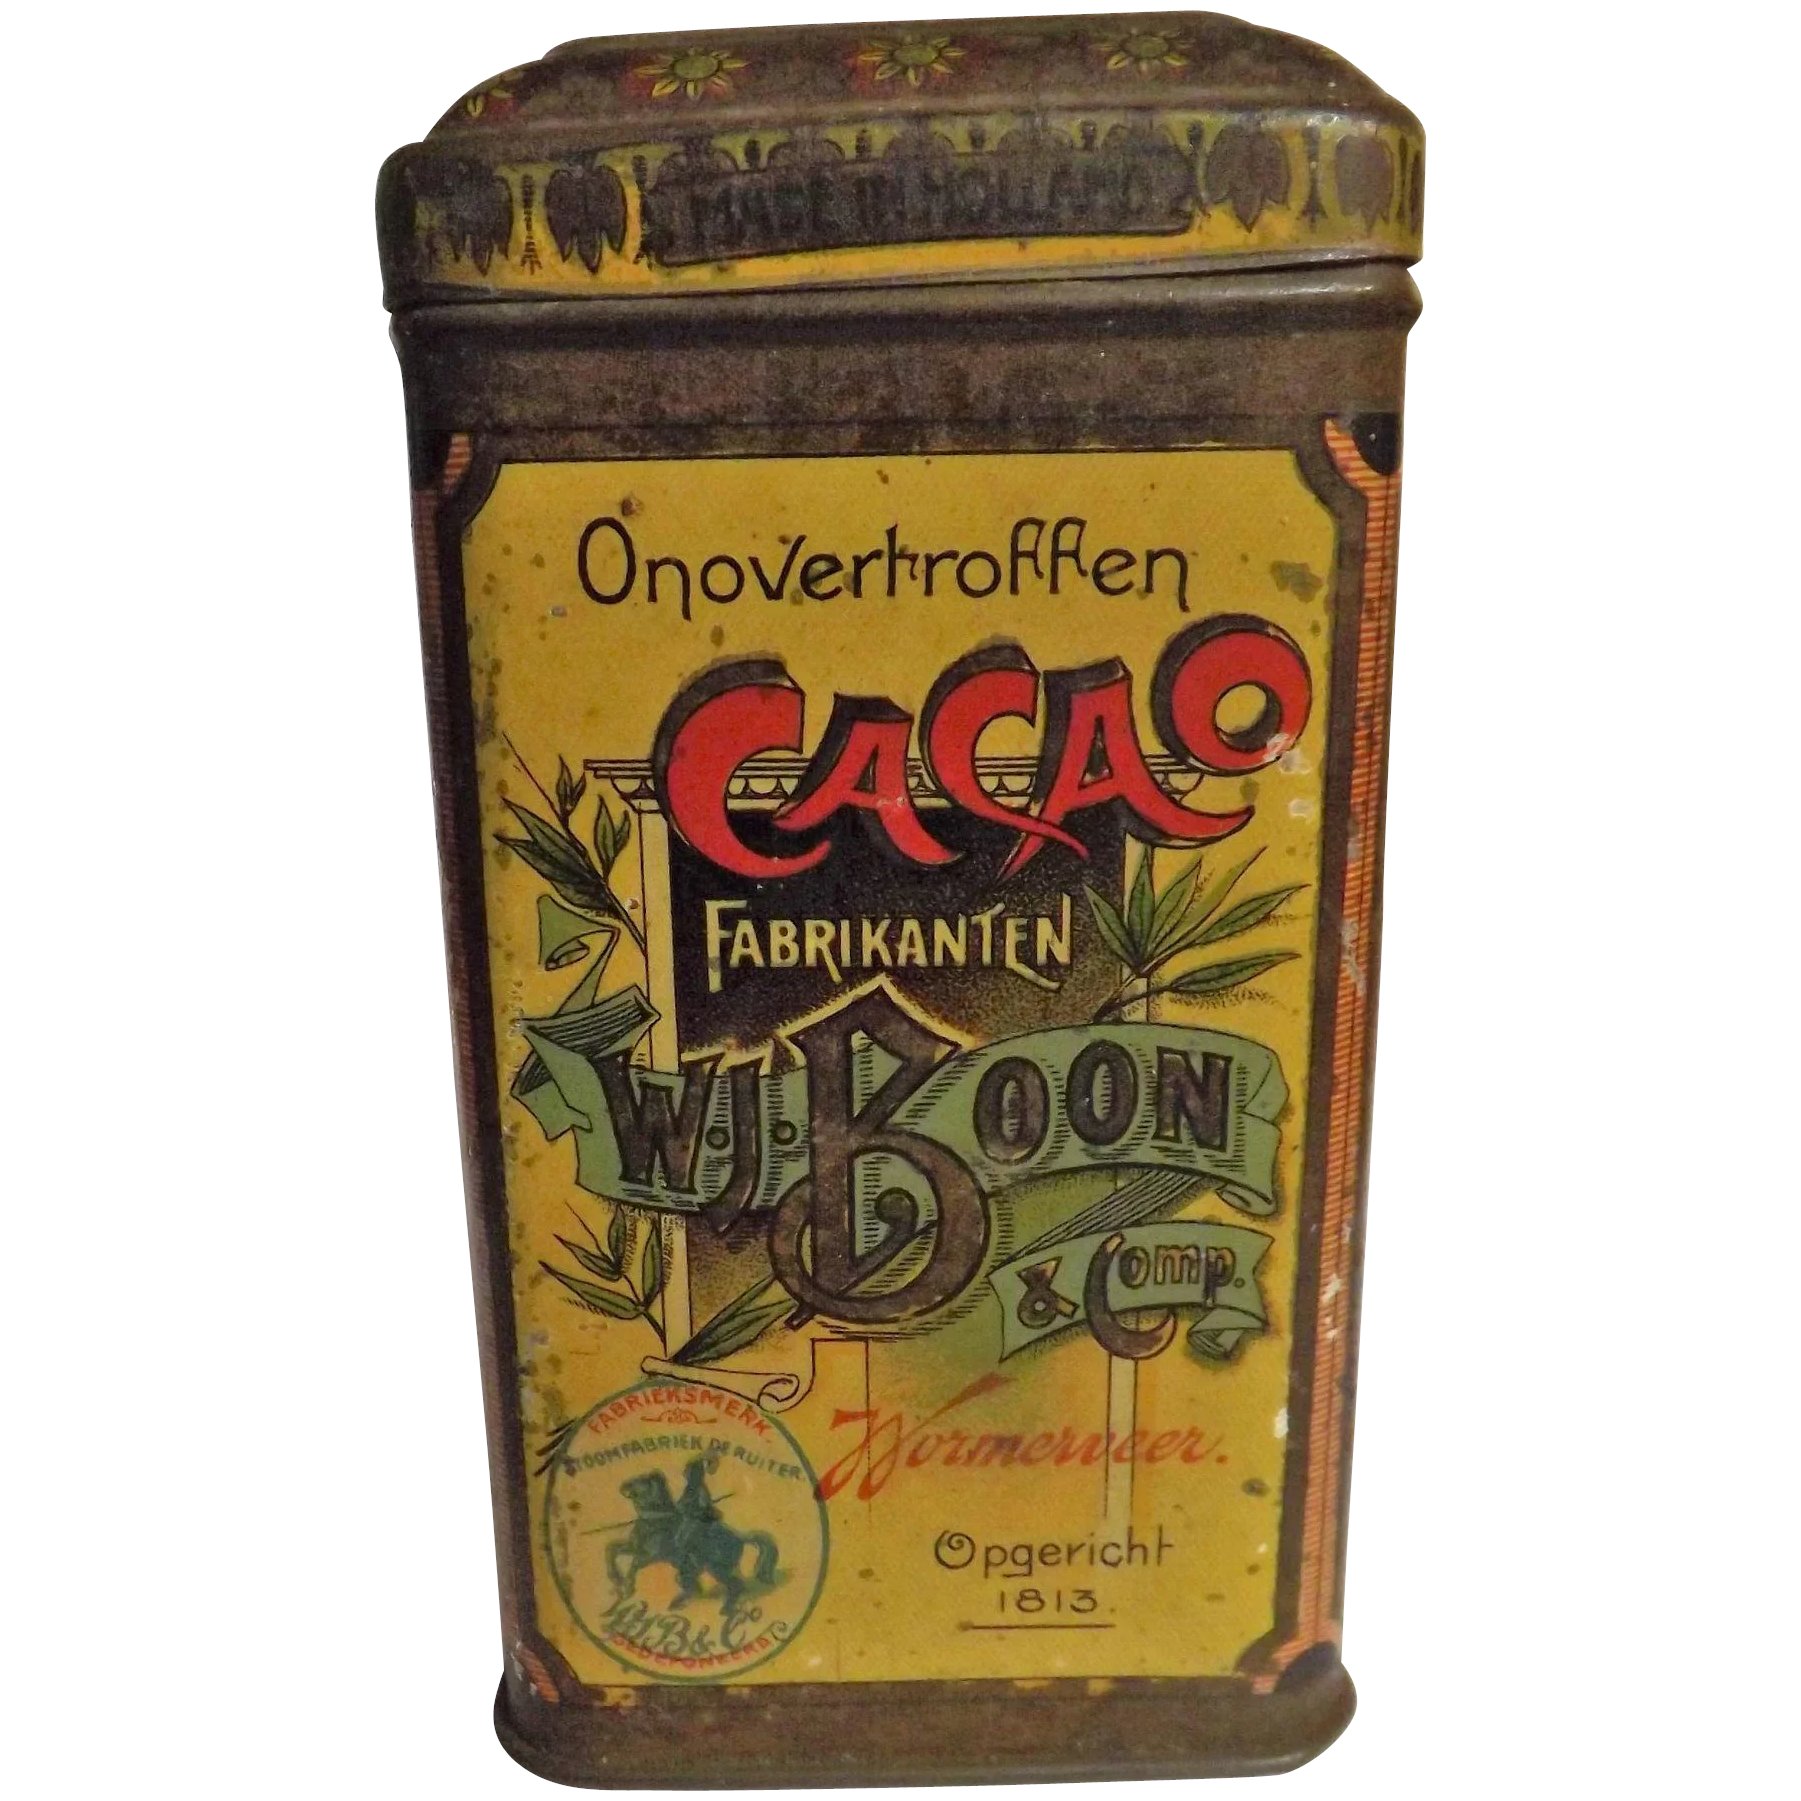 'BOON'S' Cacao - Dutch Cocoa Tin Circa 1910 - 1920